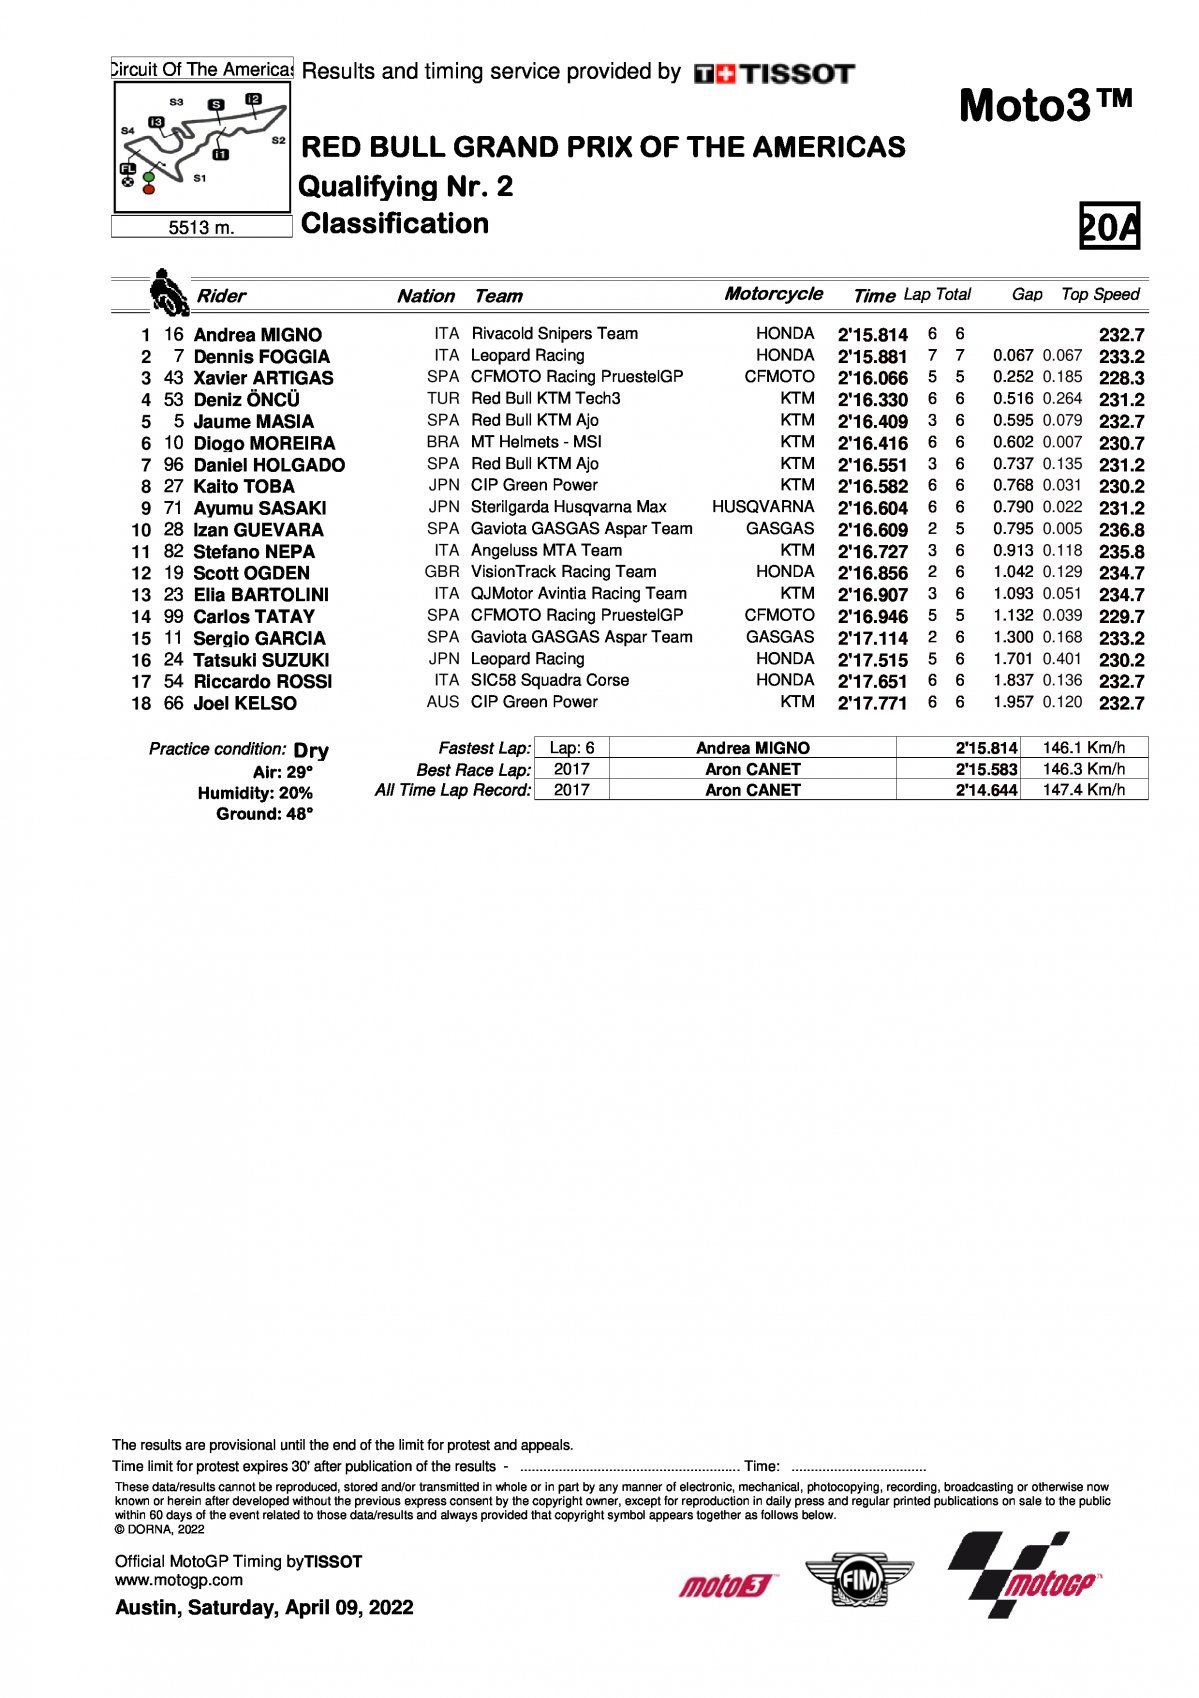 Результаты квалификации Q2 Moto3 Гран-При Америк (9/04/2022)